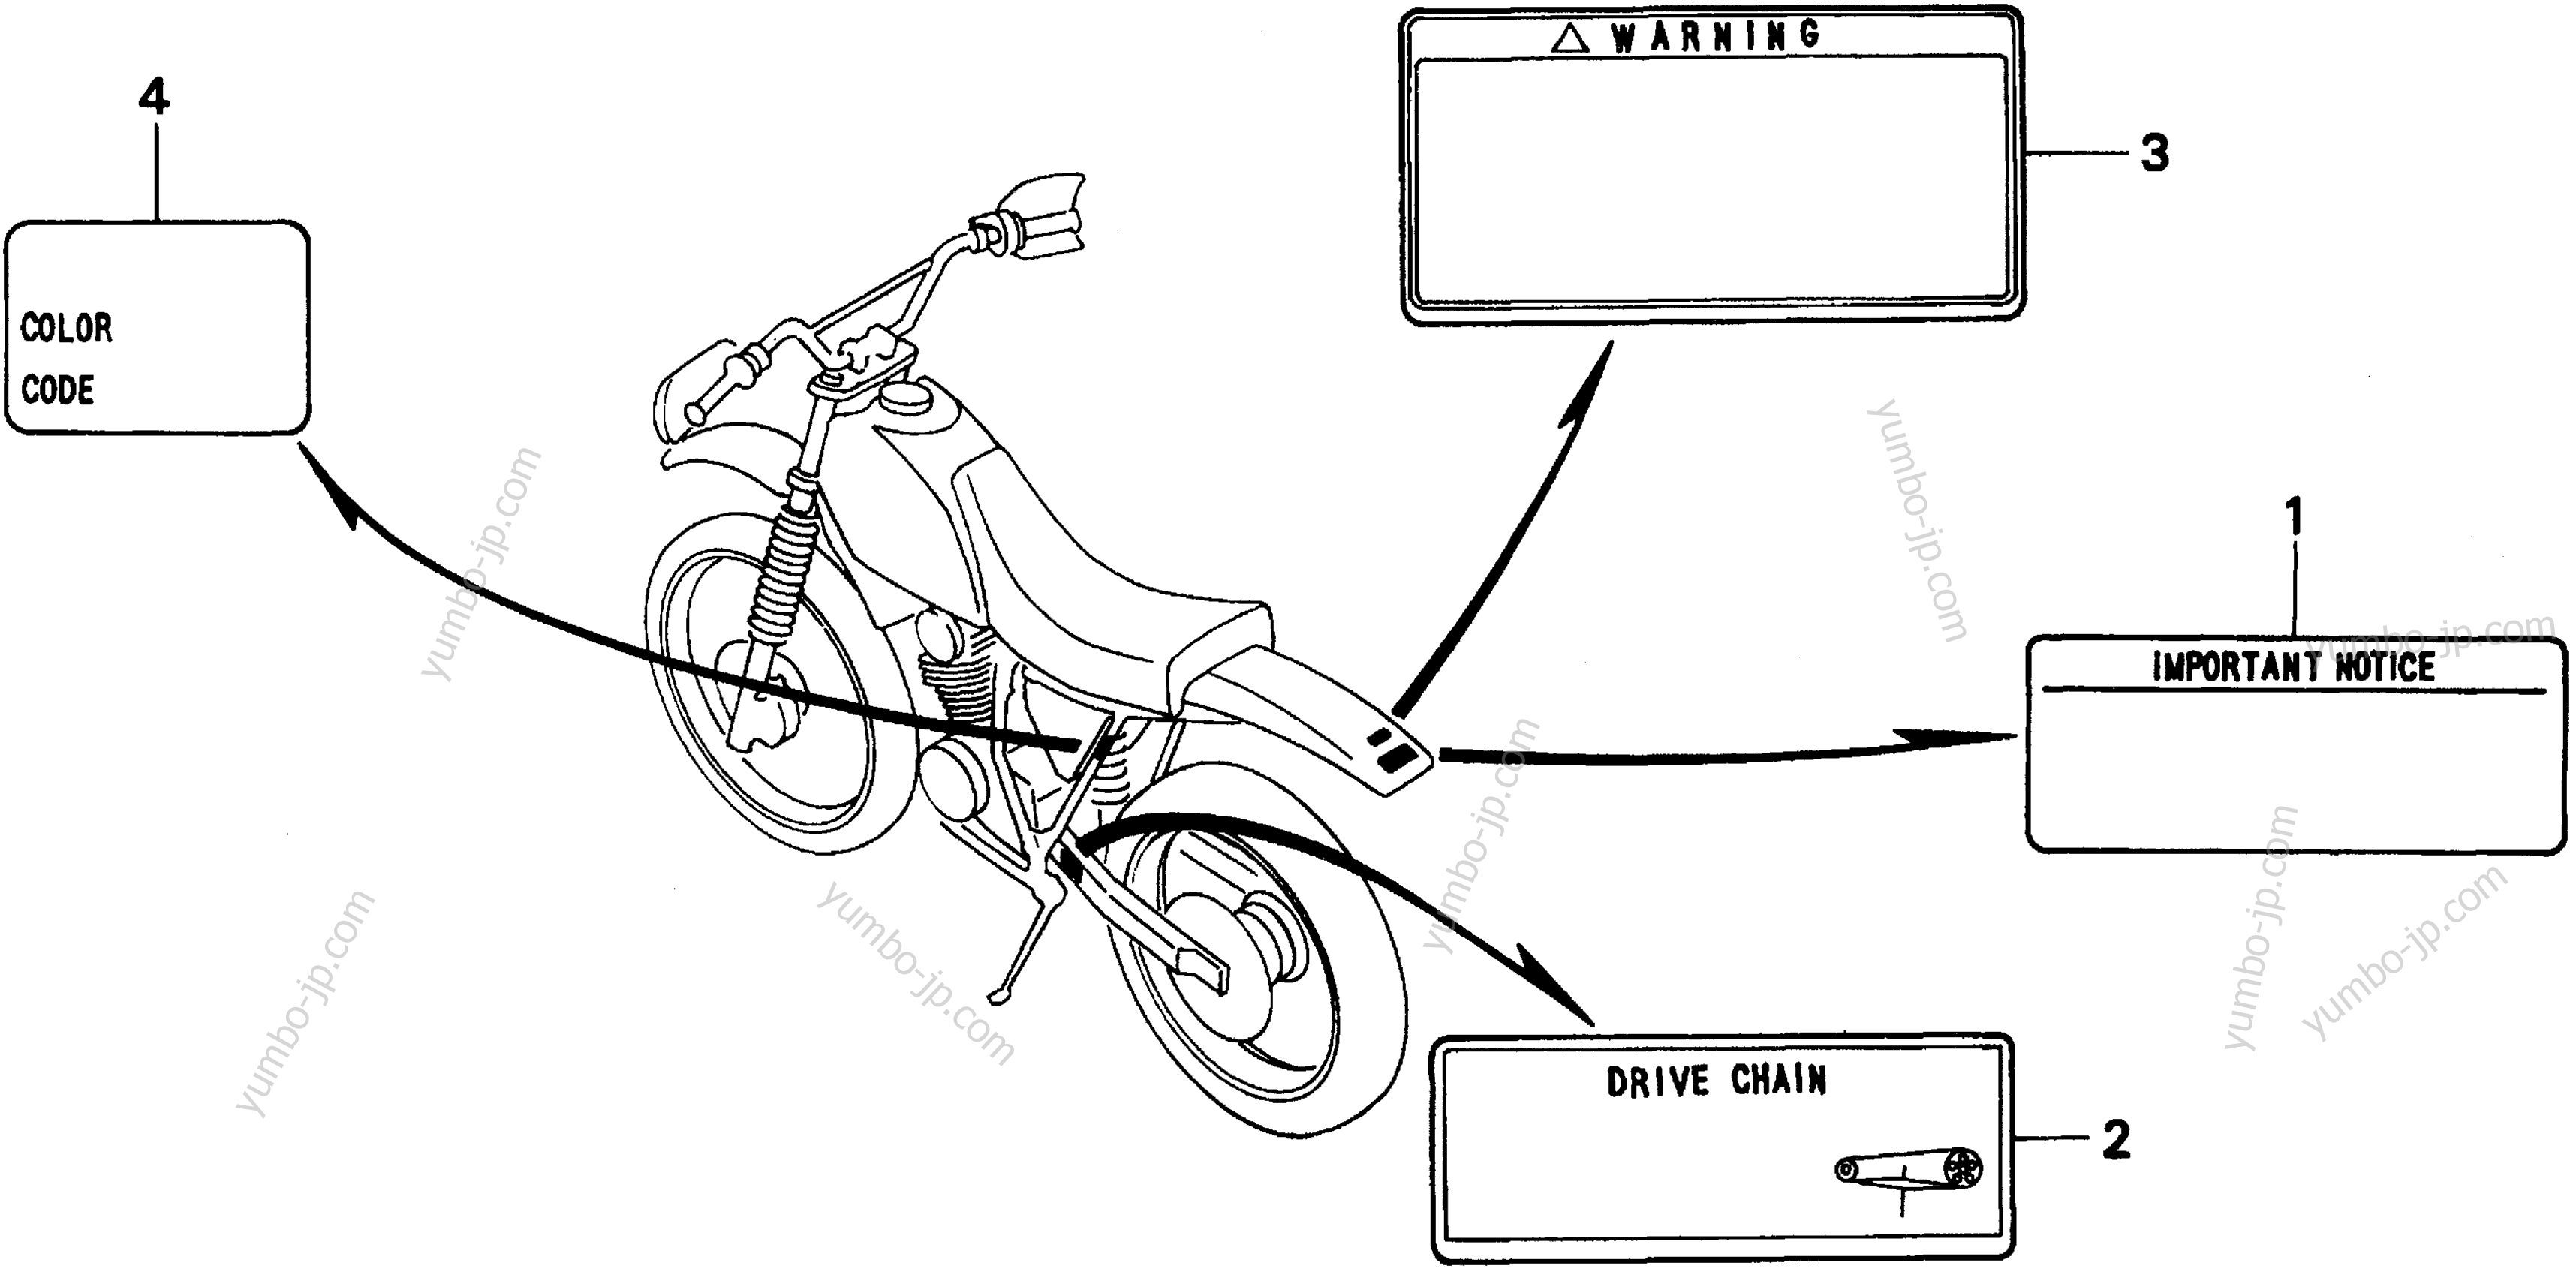 CAUTION LABELS для мотоциклов HONDA XR200R A 1996 г.